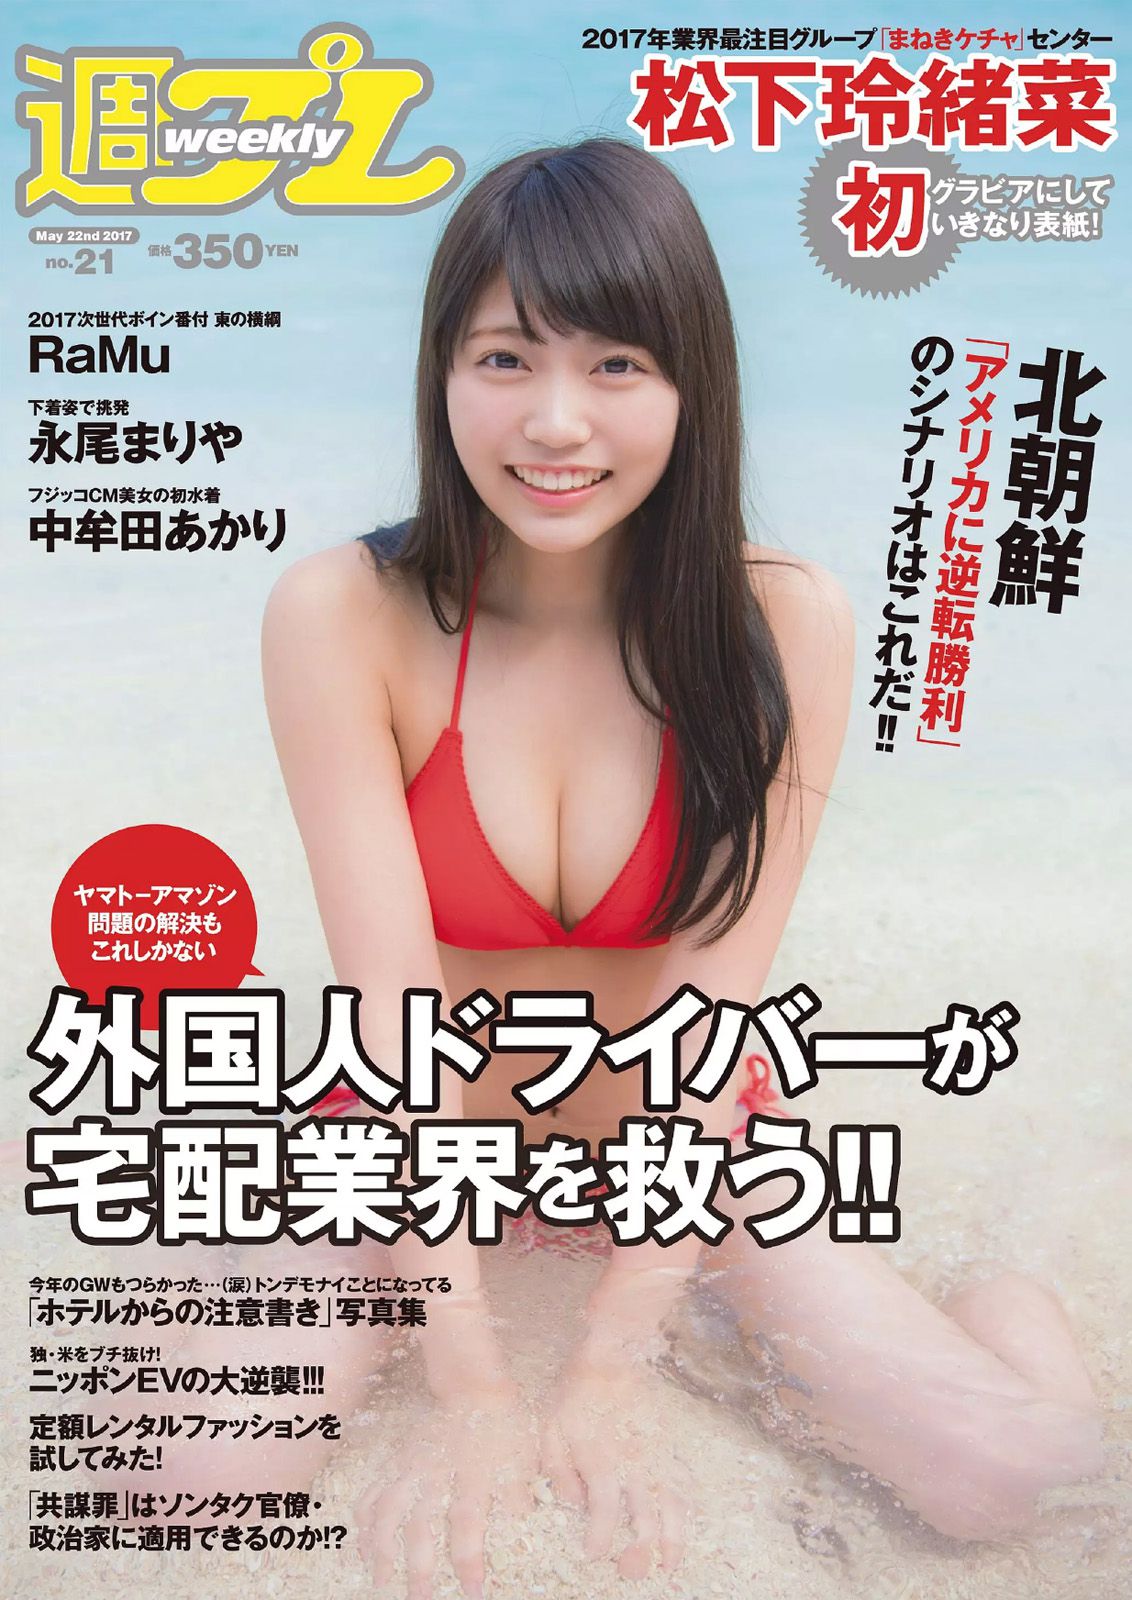 Reona Matsushita RaMu Akari Takamuta Mariya Nagao Suzuka Akimoto Michiko Tanaka Hazuki Nishioka [Weekly Playboy] 2017 No.21 Photograph Page 7 No.074617